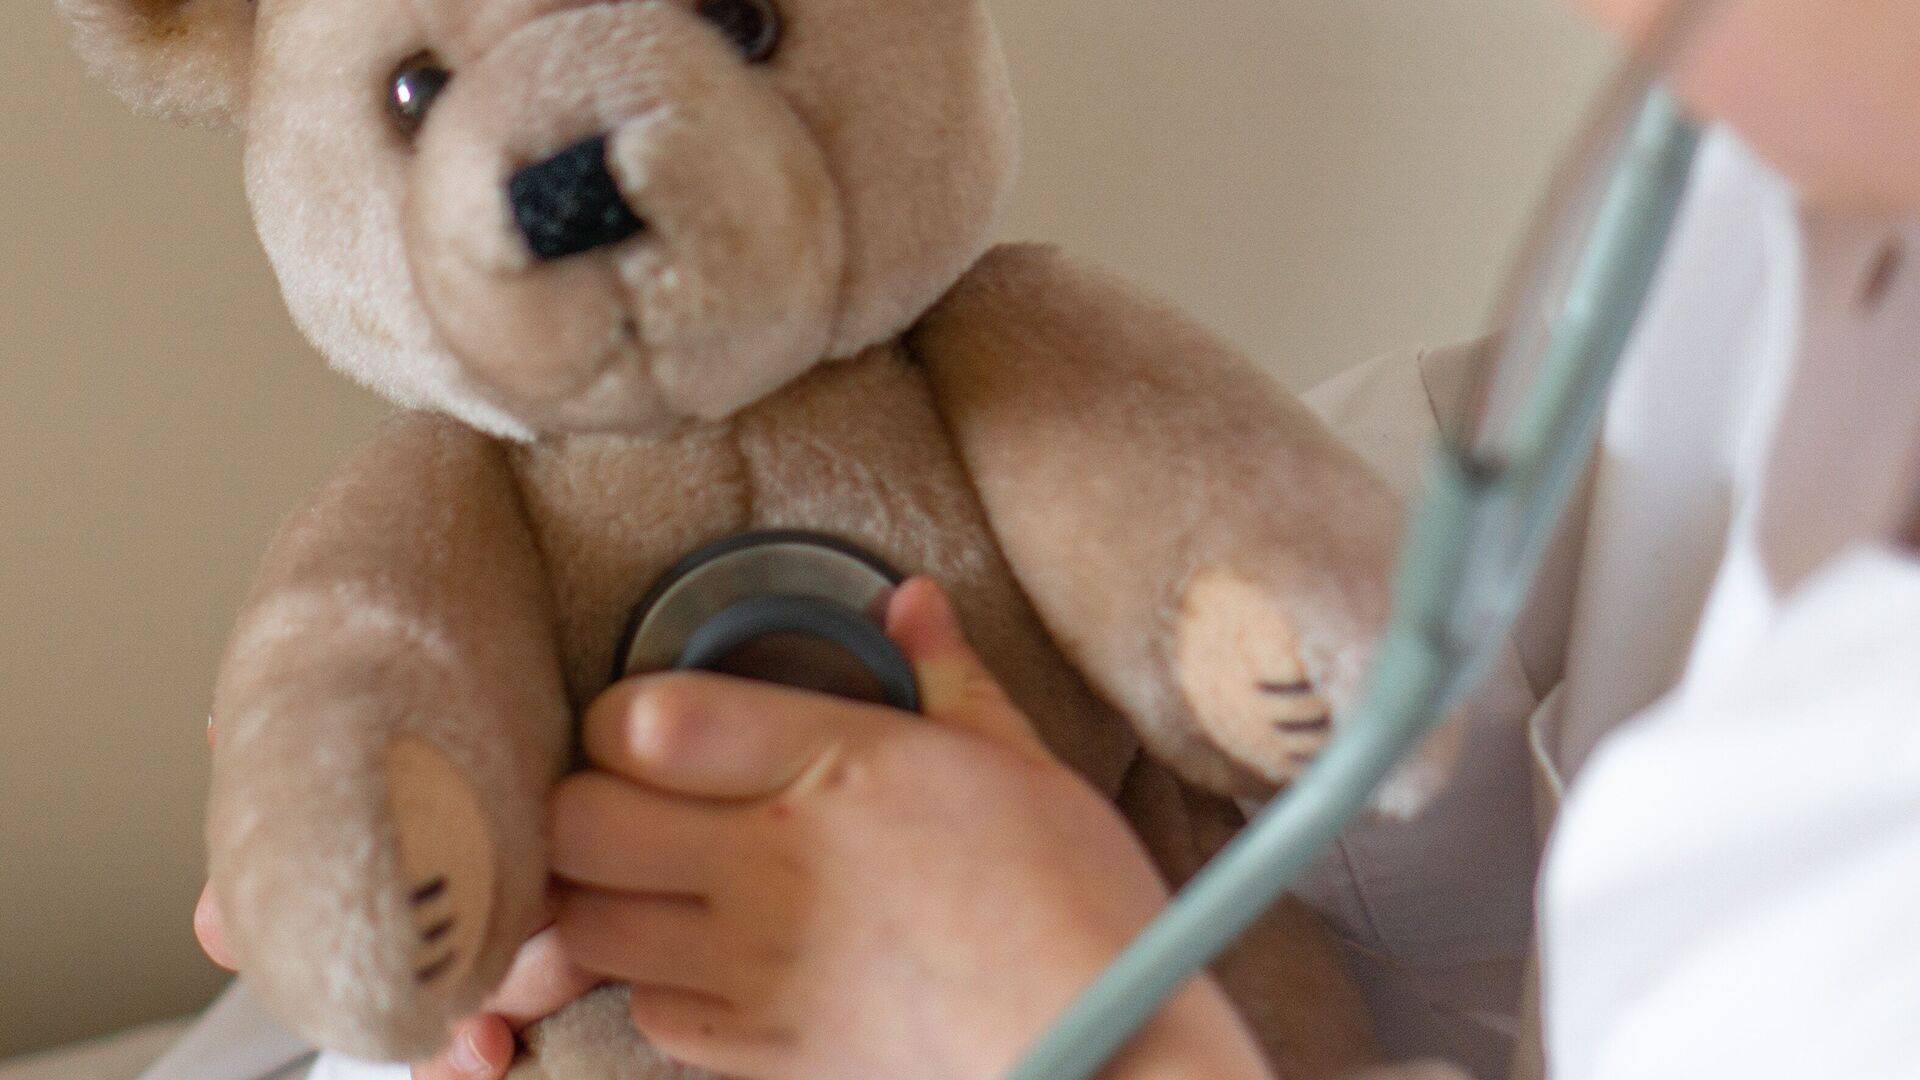 Kind in een witte jas speelt doktertje – met een stethoscoop wordt de knuffelbeer onderzocht